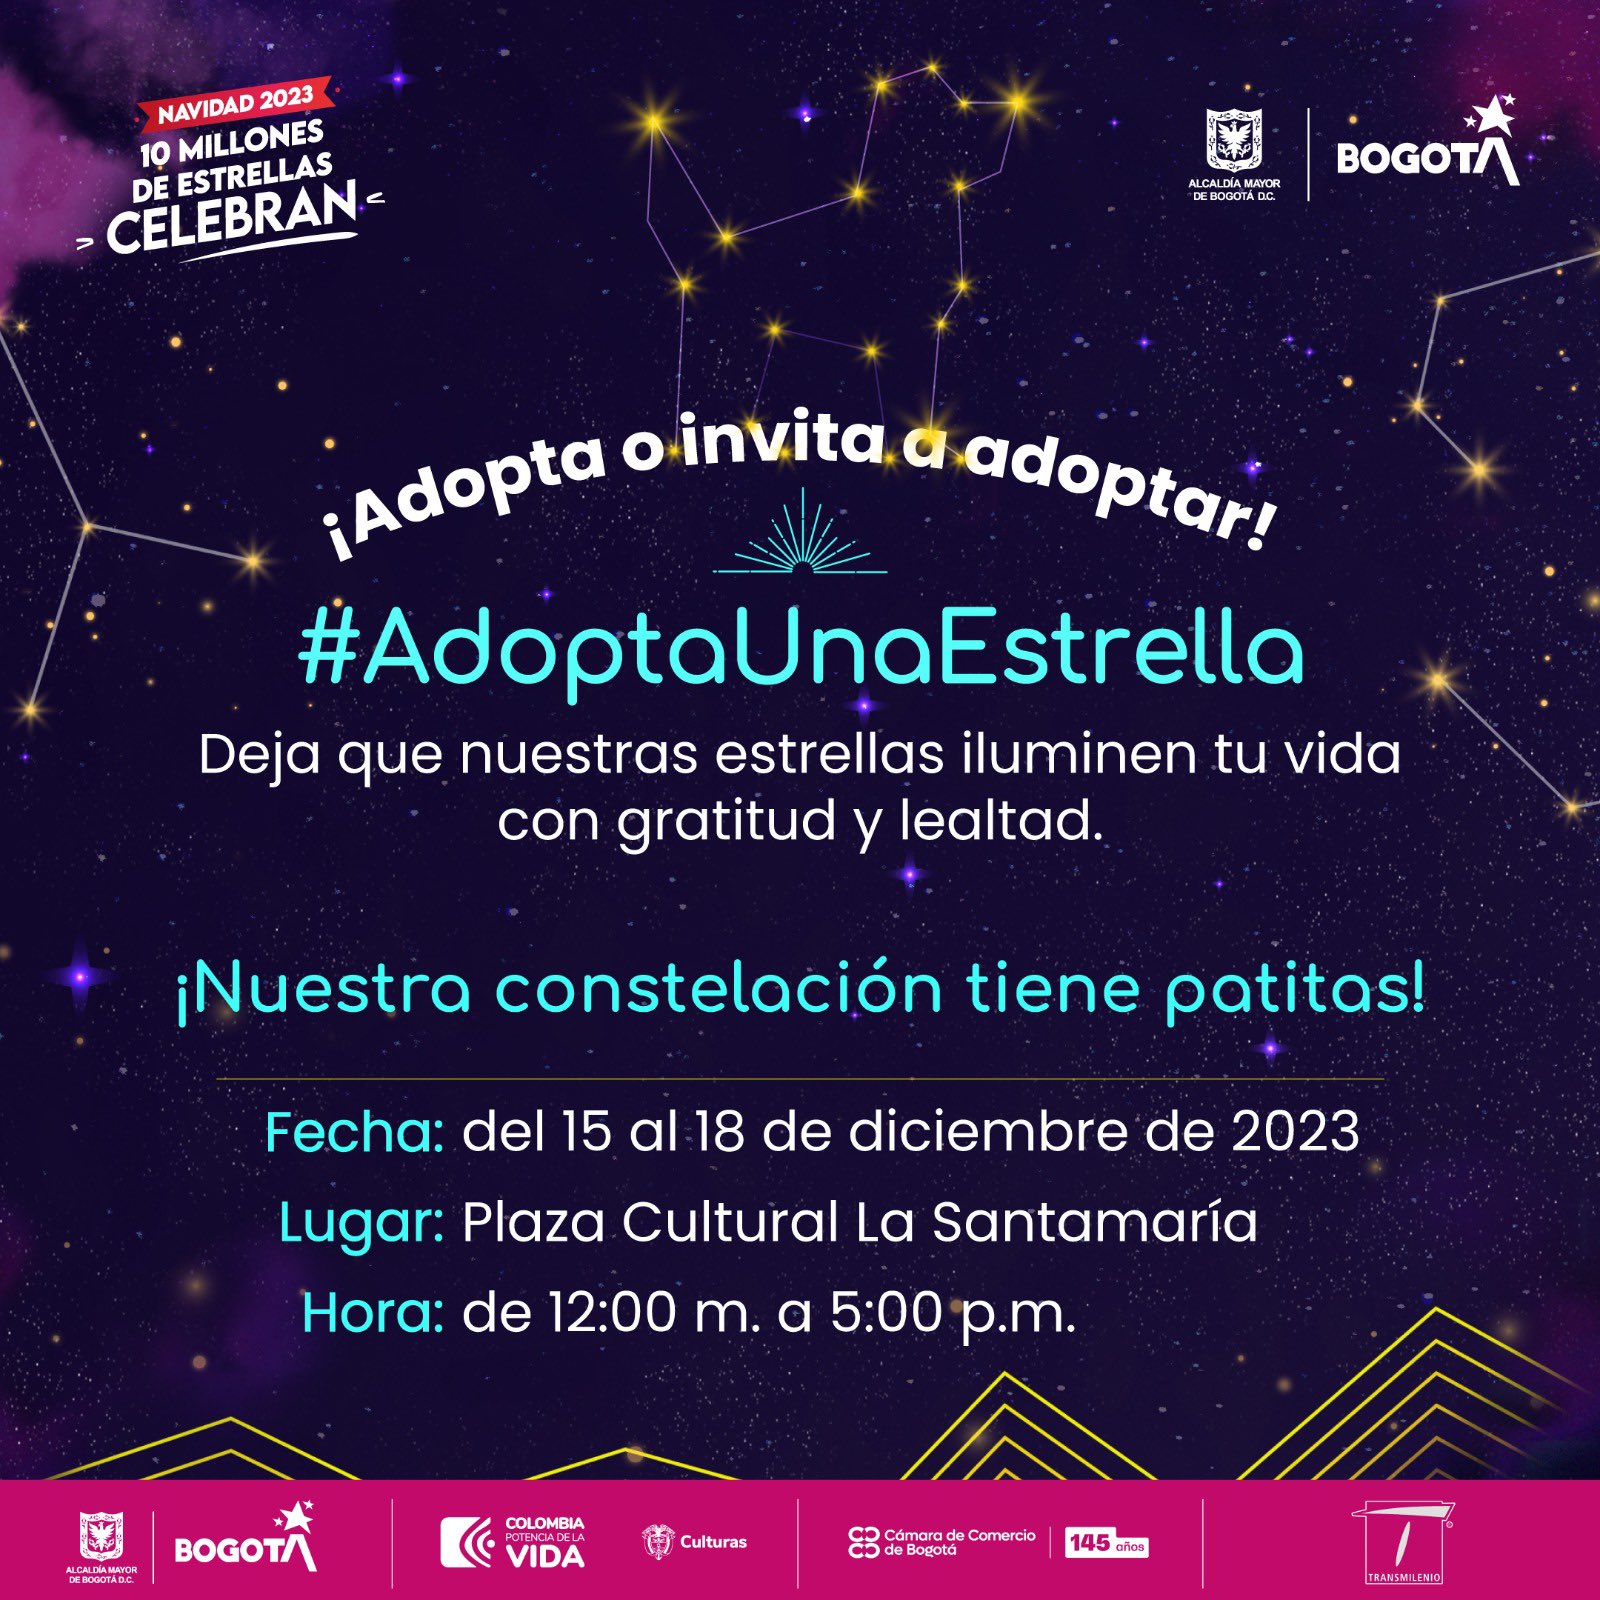 Jornada de adopción de perros y gatos en Bogotá 2023: pieza Idpyba